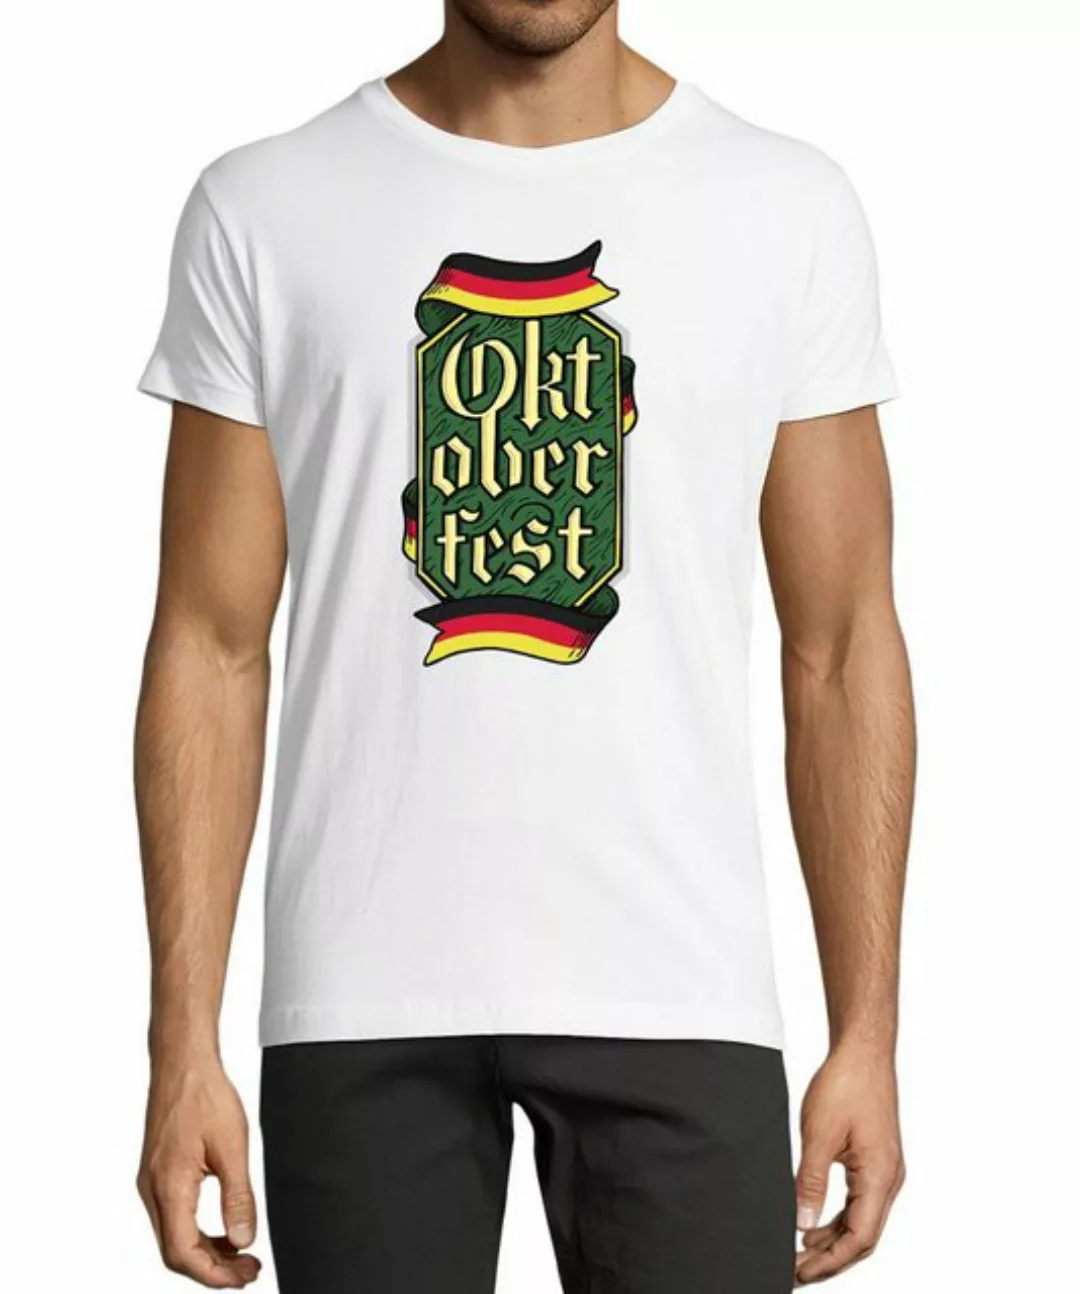 MyDesign24 T-Shirt Herren Party Shirt - Trinkshirt Oktoberfest T-Shirt Baum günstig online kaufen